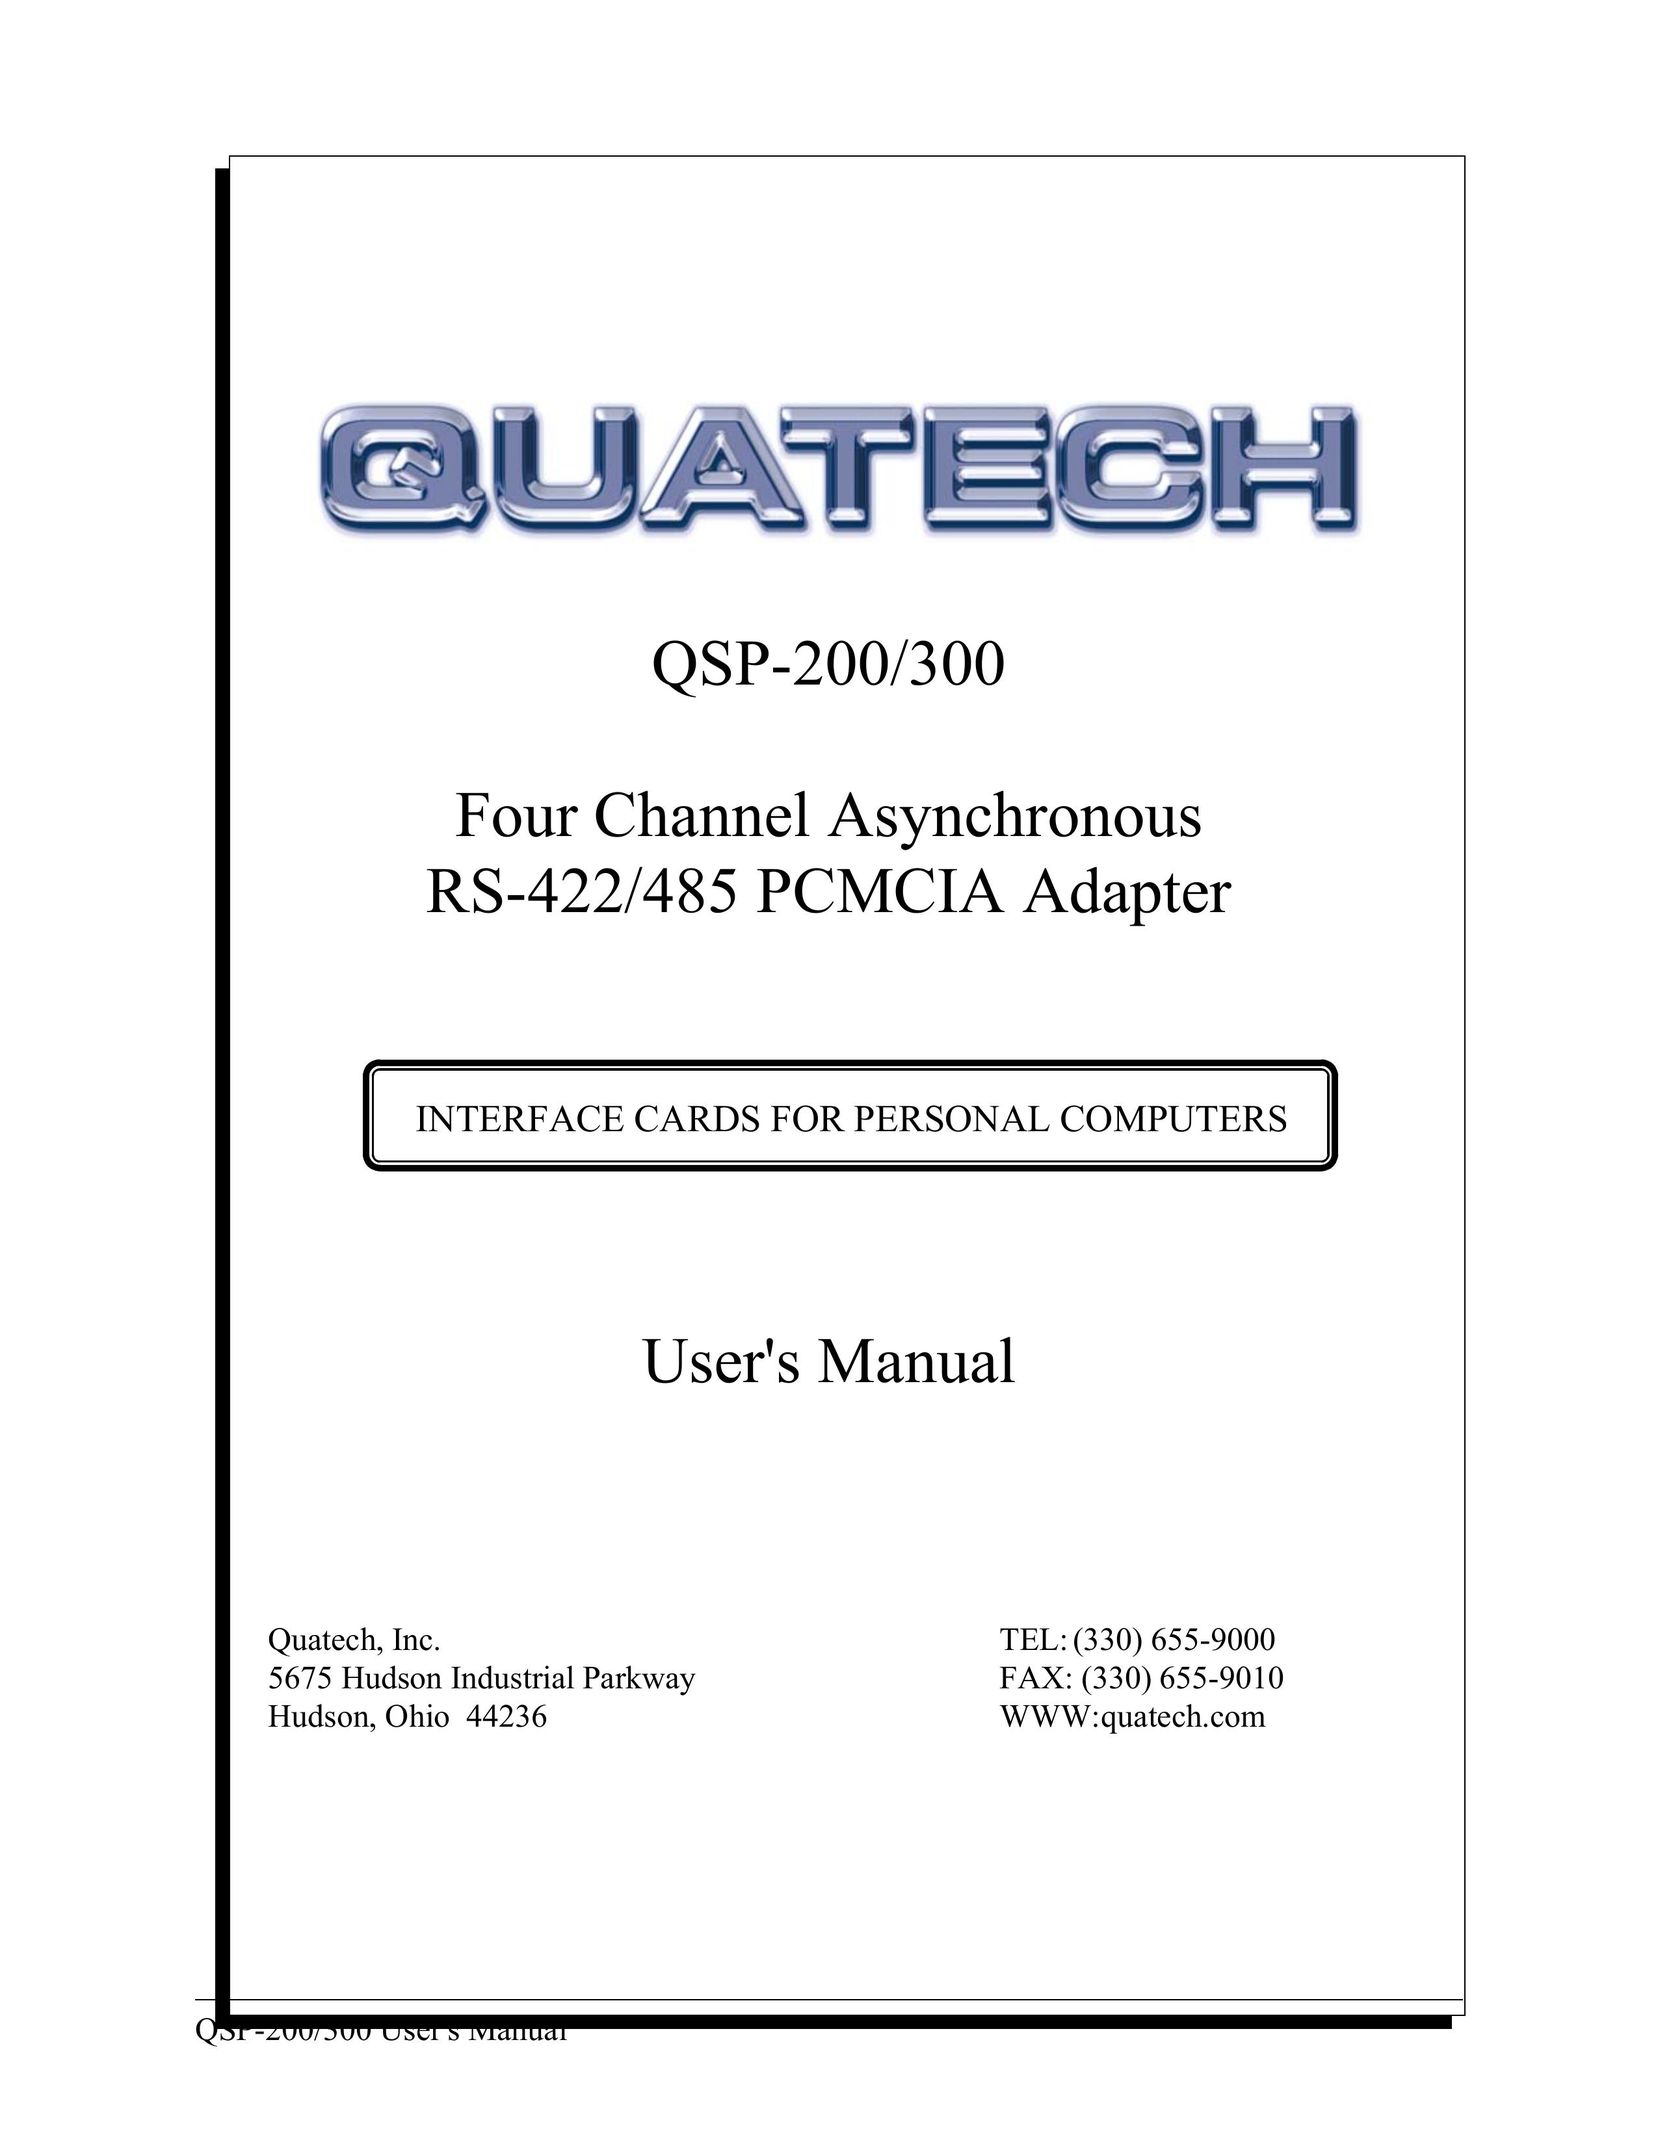 Quatech QSP-200/300 Network Card User Manual